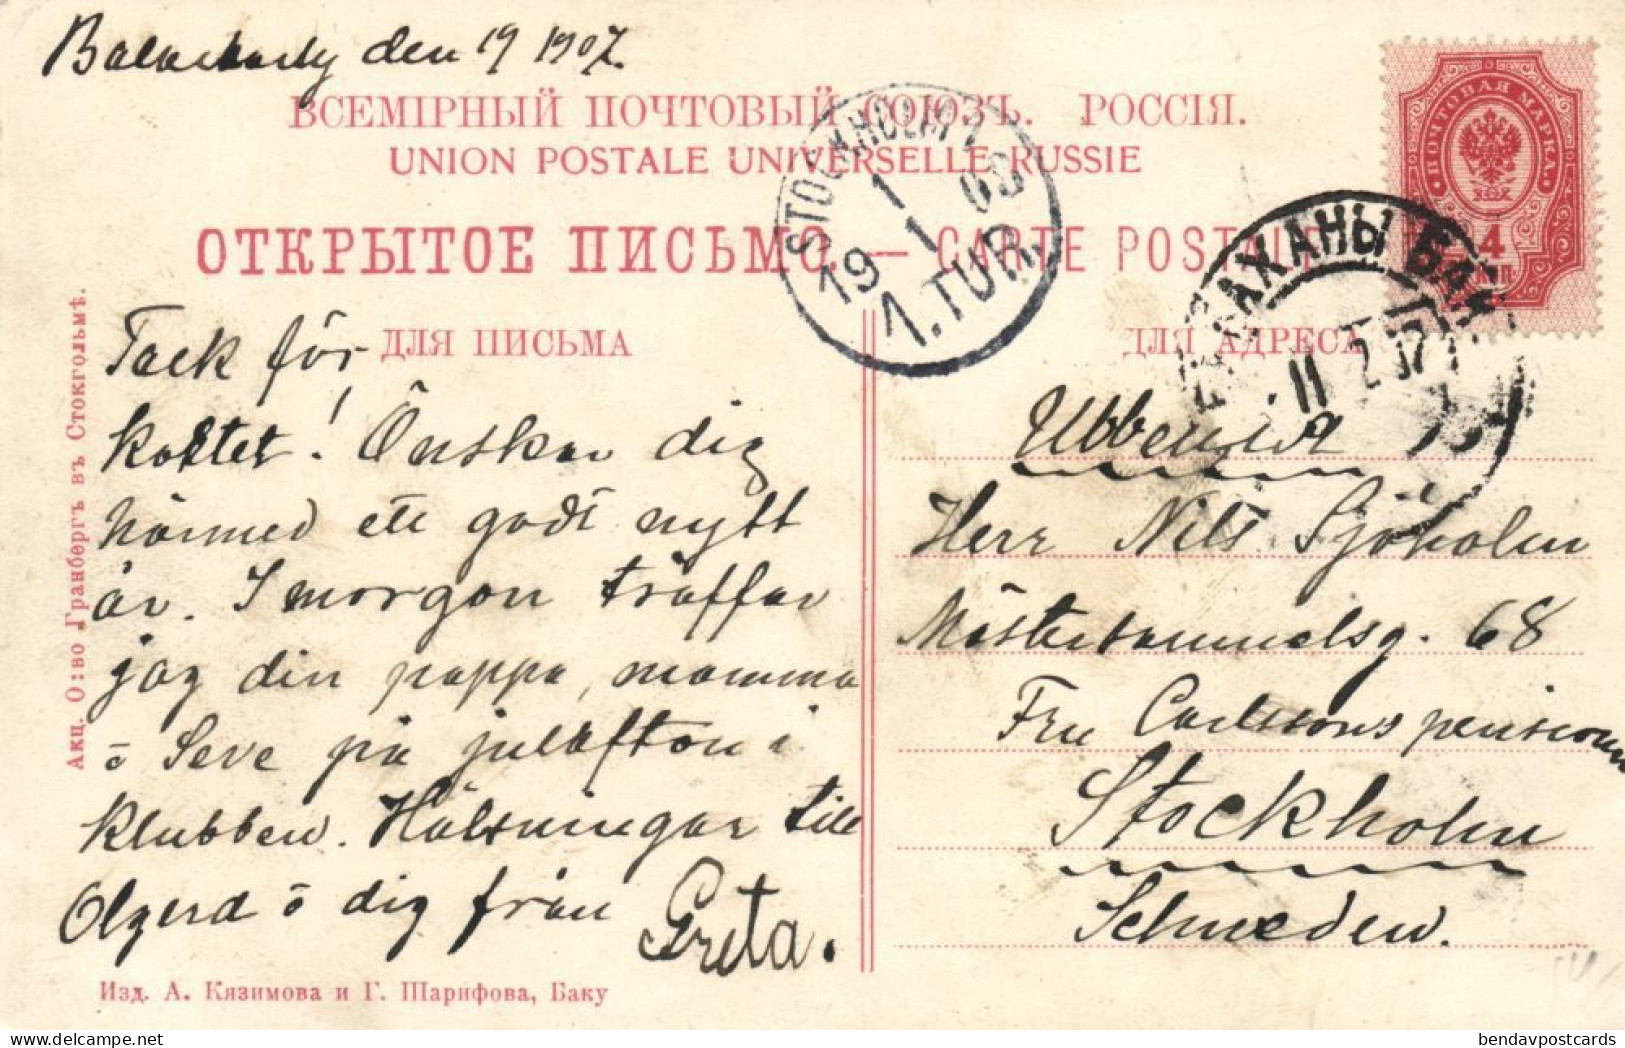 Azerbaijan Russia, BAKU BACOU, Railway Station (1907) Postcard - Azerbeidzjan